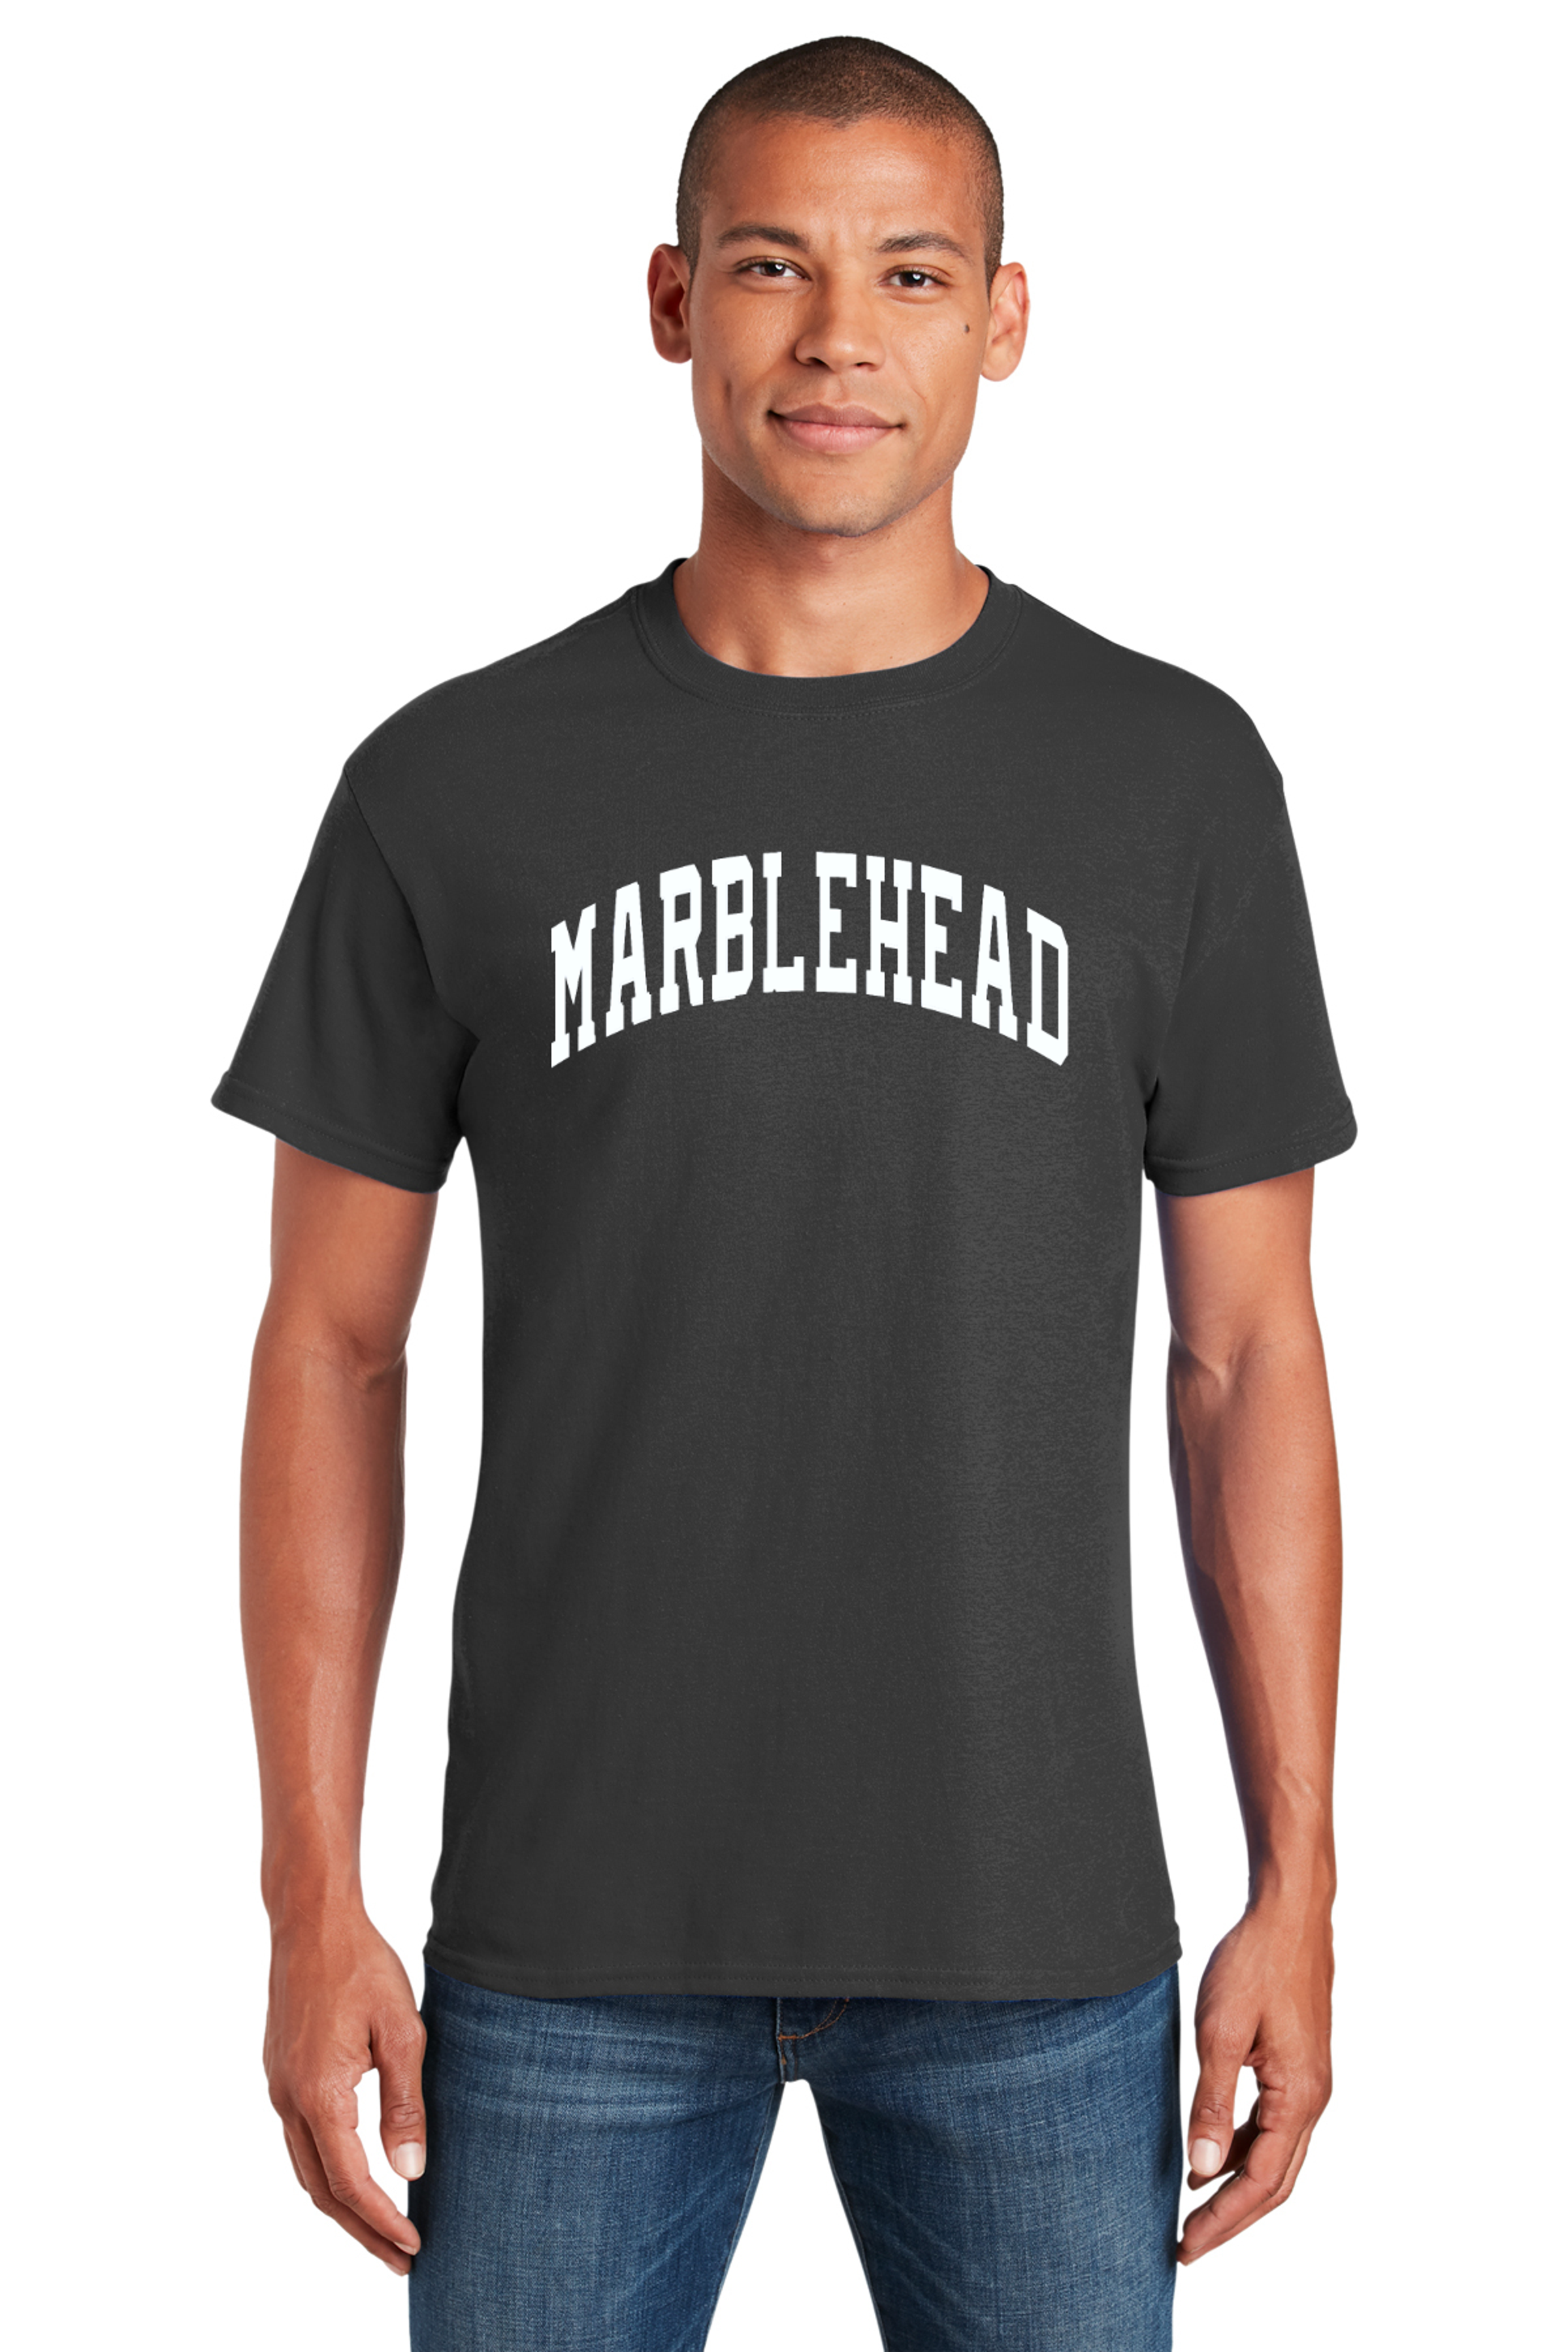 Marblehead Varsity Style Heavyweight Tee